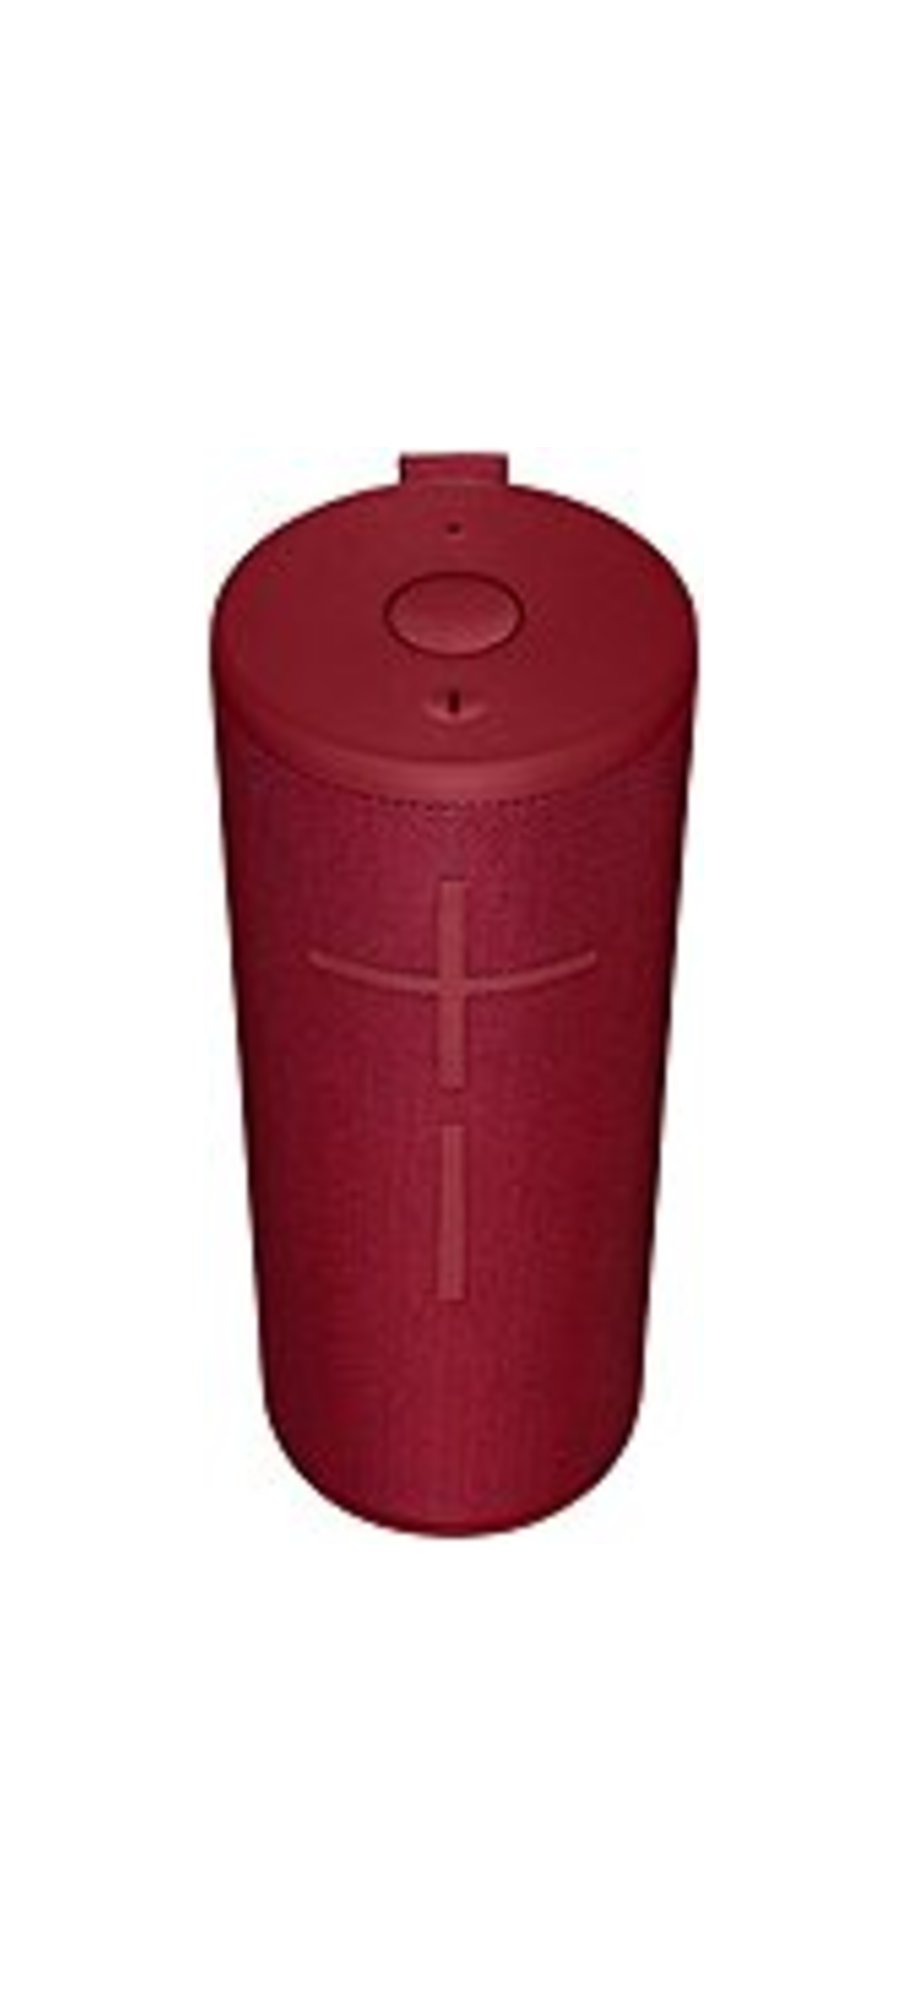 Ultimate Ears 984-001352 BOOM 3 Bluetooth Waterproof Speaker - Sunset Red